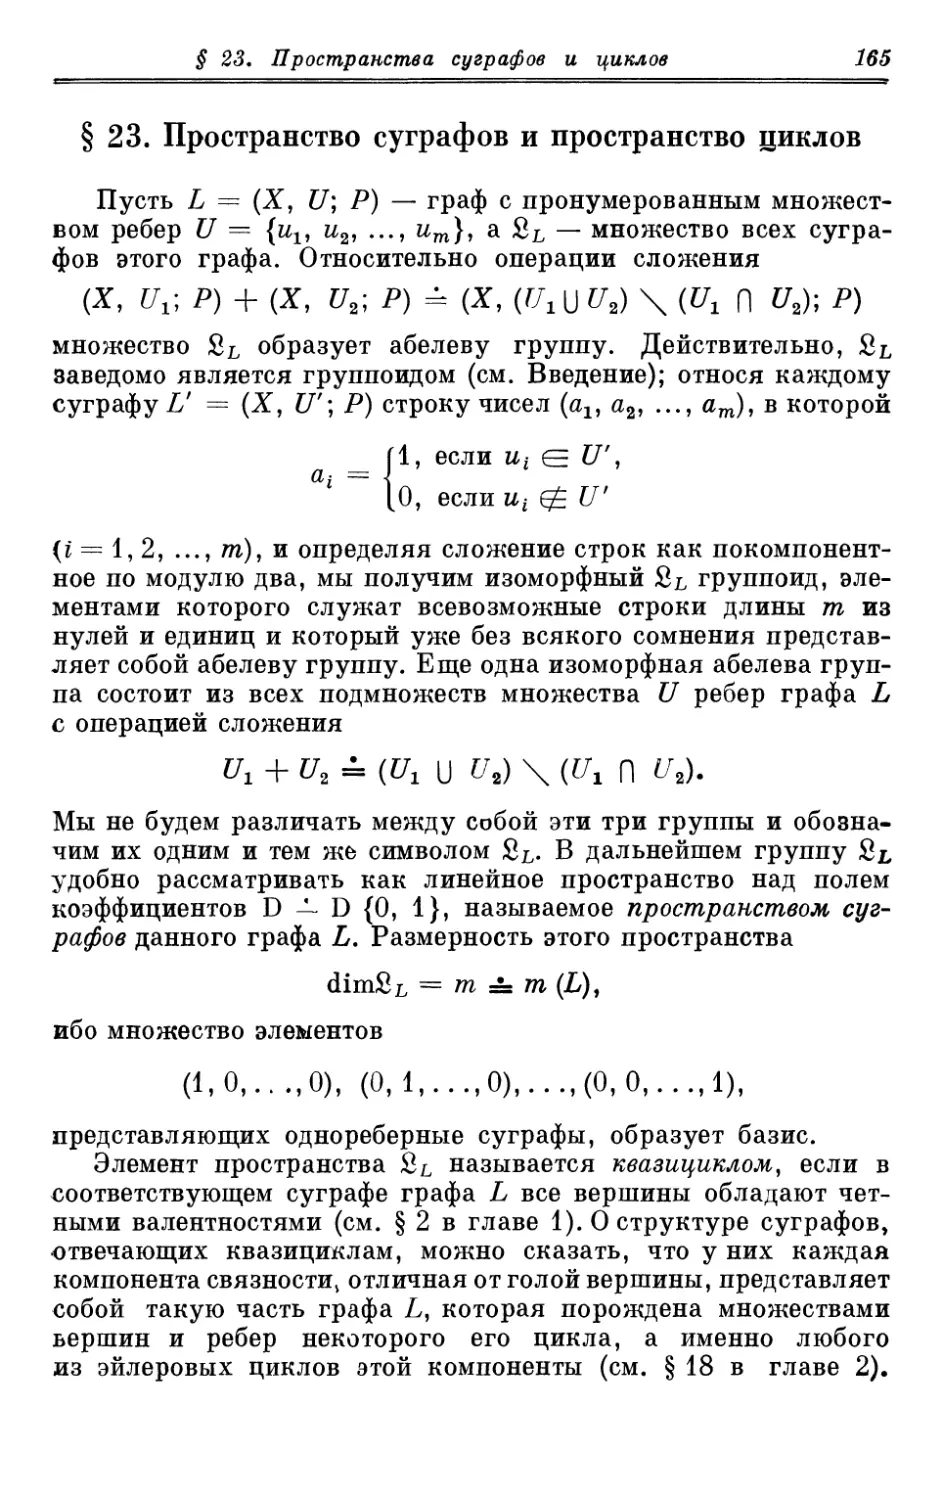 § 23. Пространство суграфов и пространство циклов